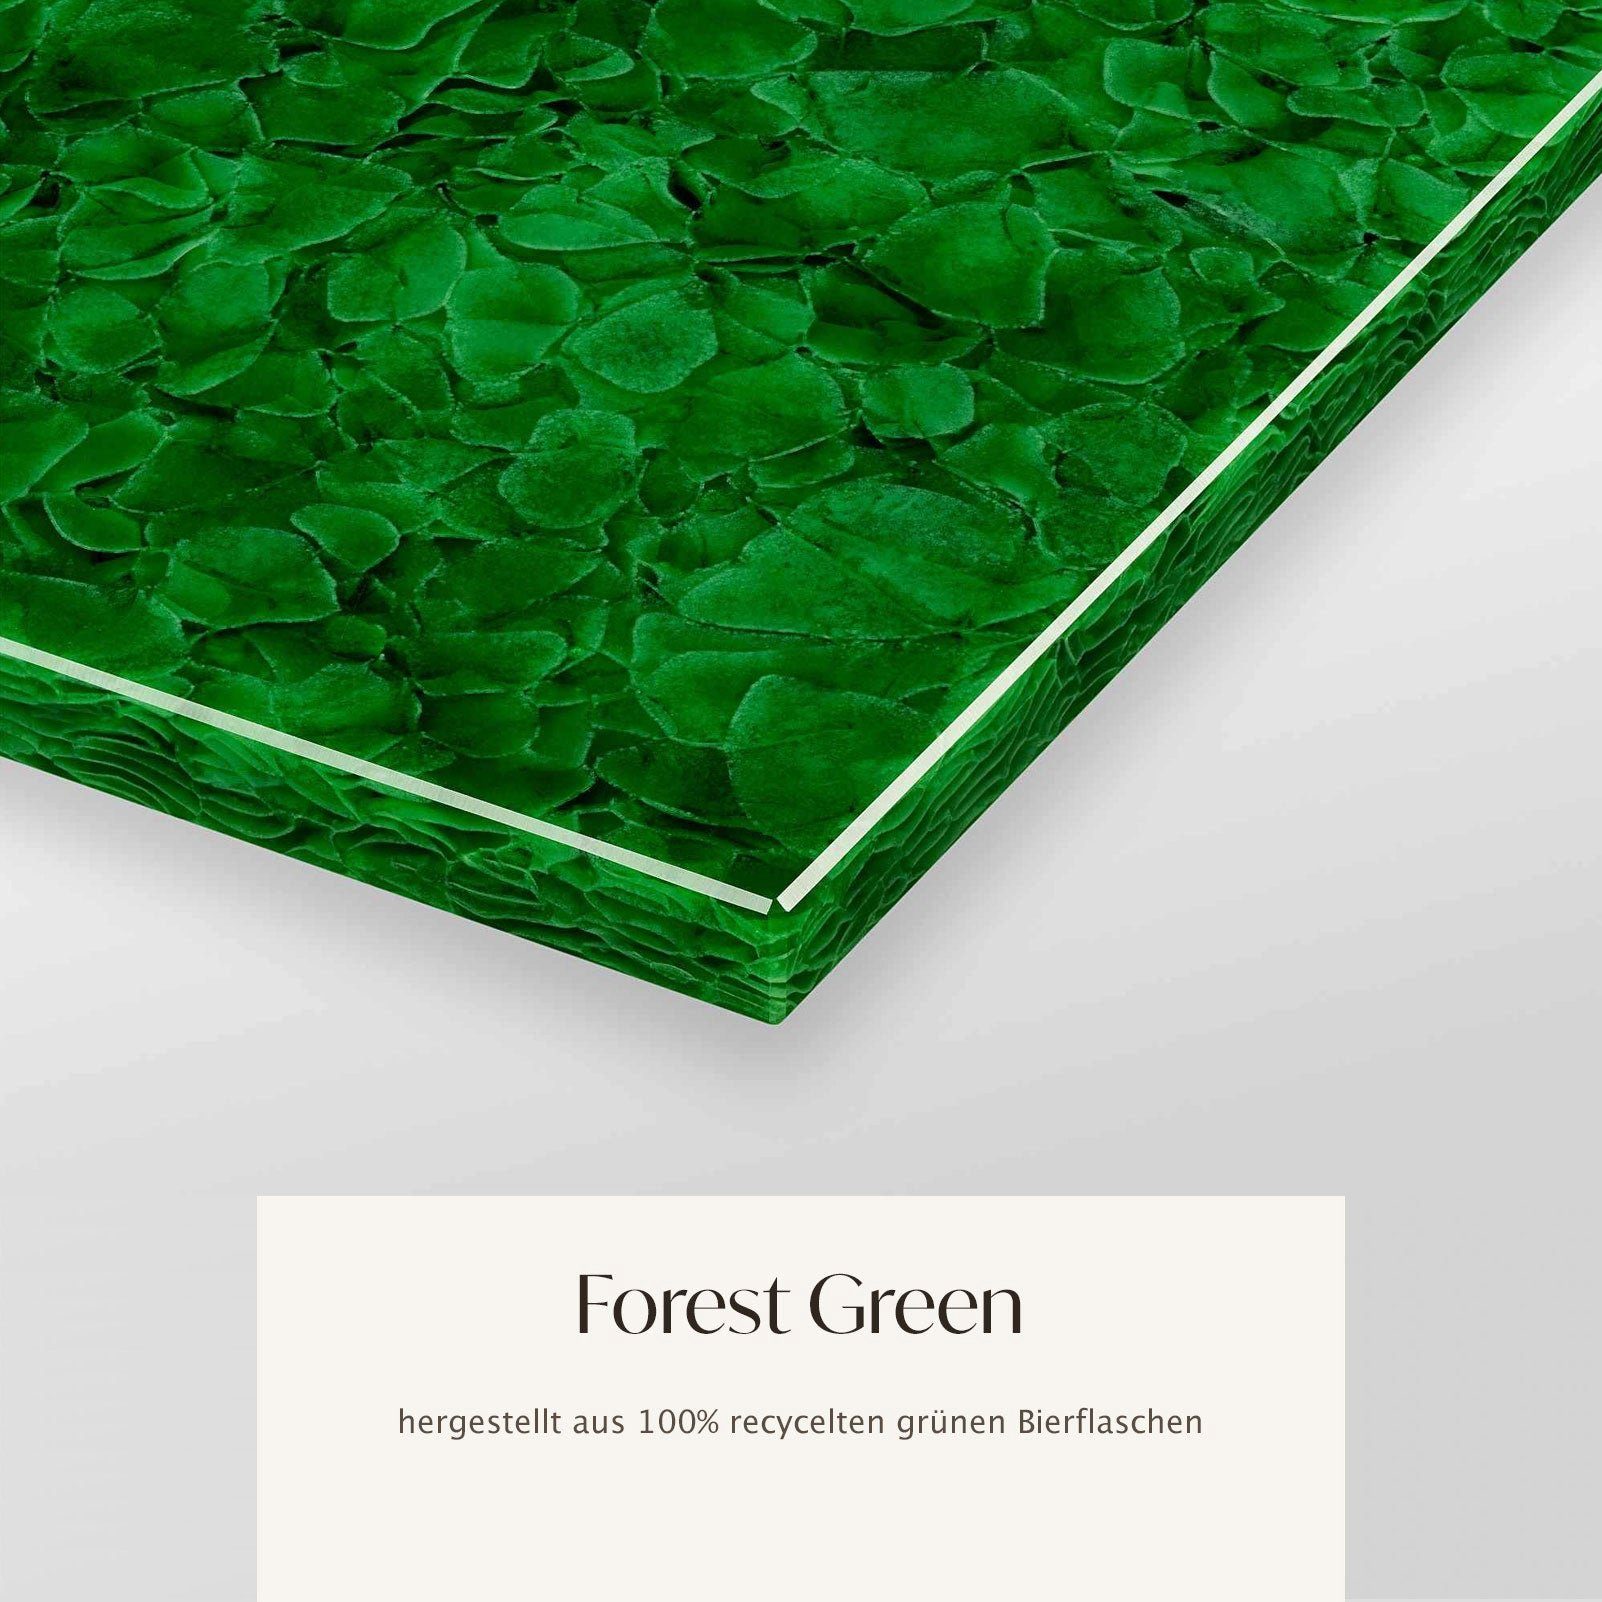 Käseplatte GRONINGEN Forest Atelier mit GLASKERAMIK, Glaskeramik, Green 30x20x2cm MAGNA Dekotablett eckig,